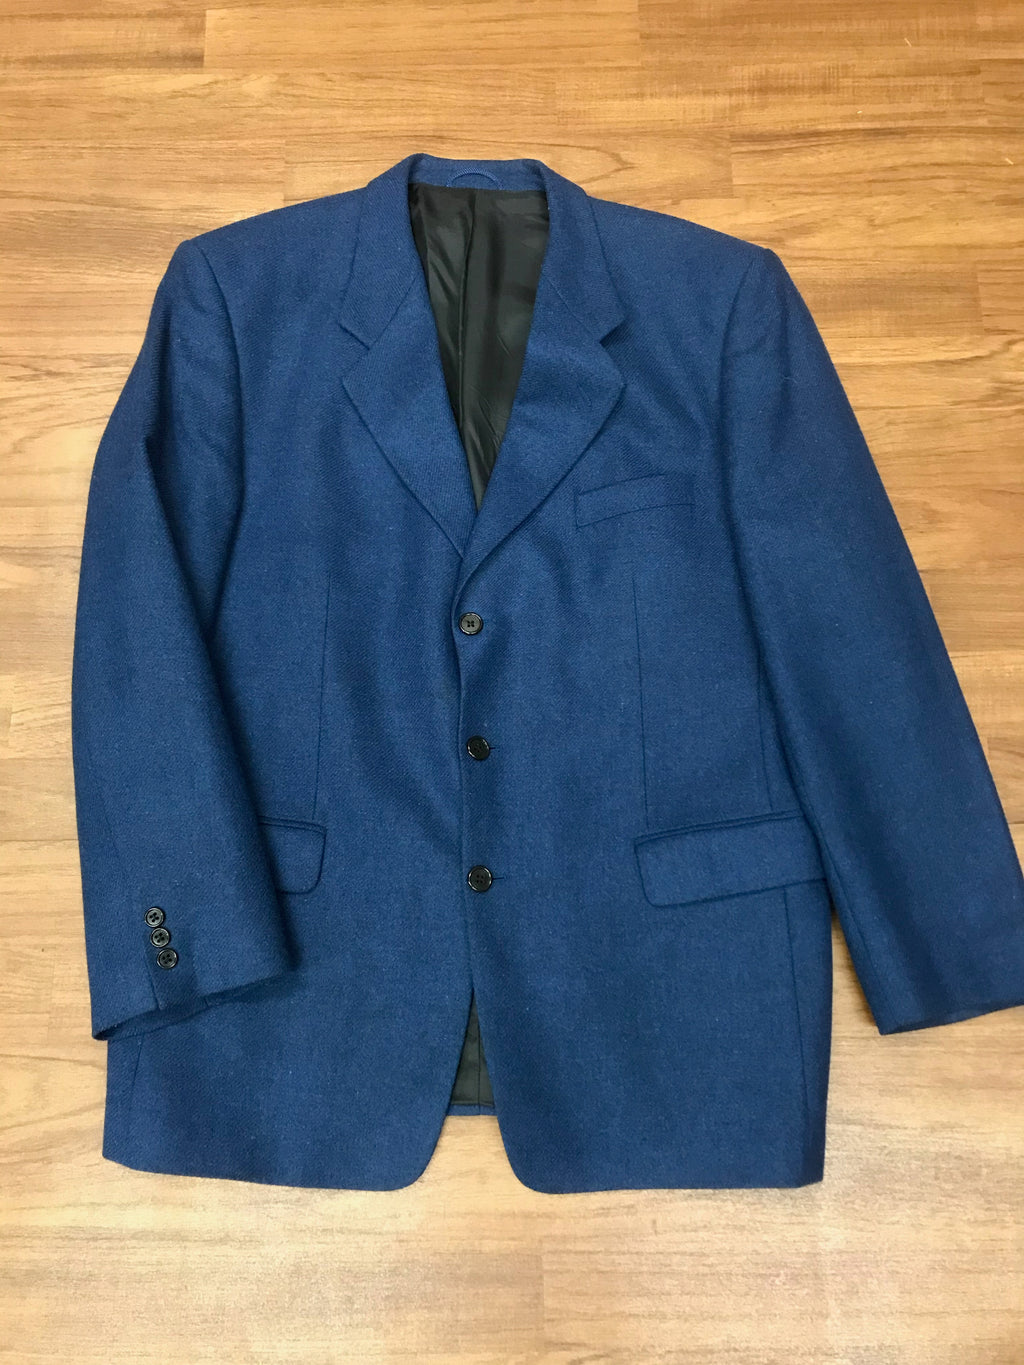 Vintage Jacke Tweed Herren Gr.52